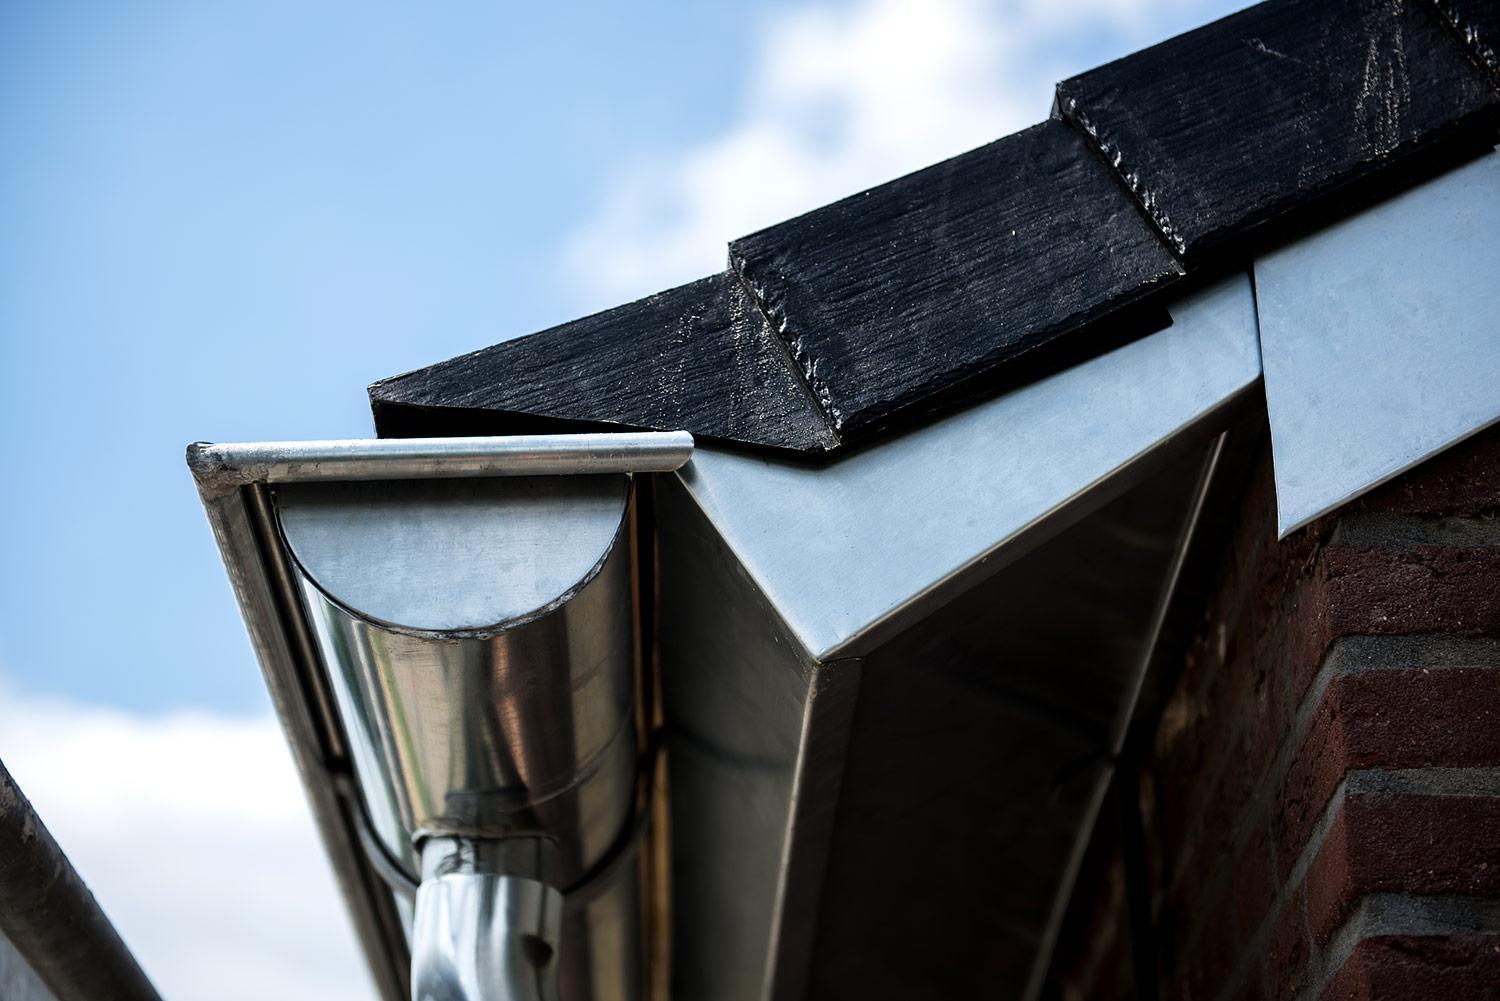 Woning gerenoveerd met Eurolite Slate rubber dakleien en zink op maat - Koningsbosch